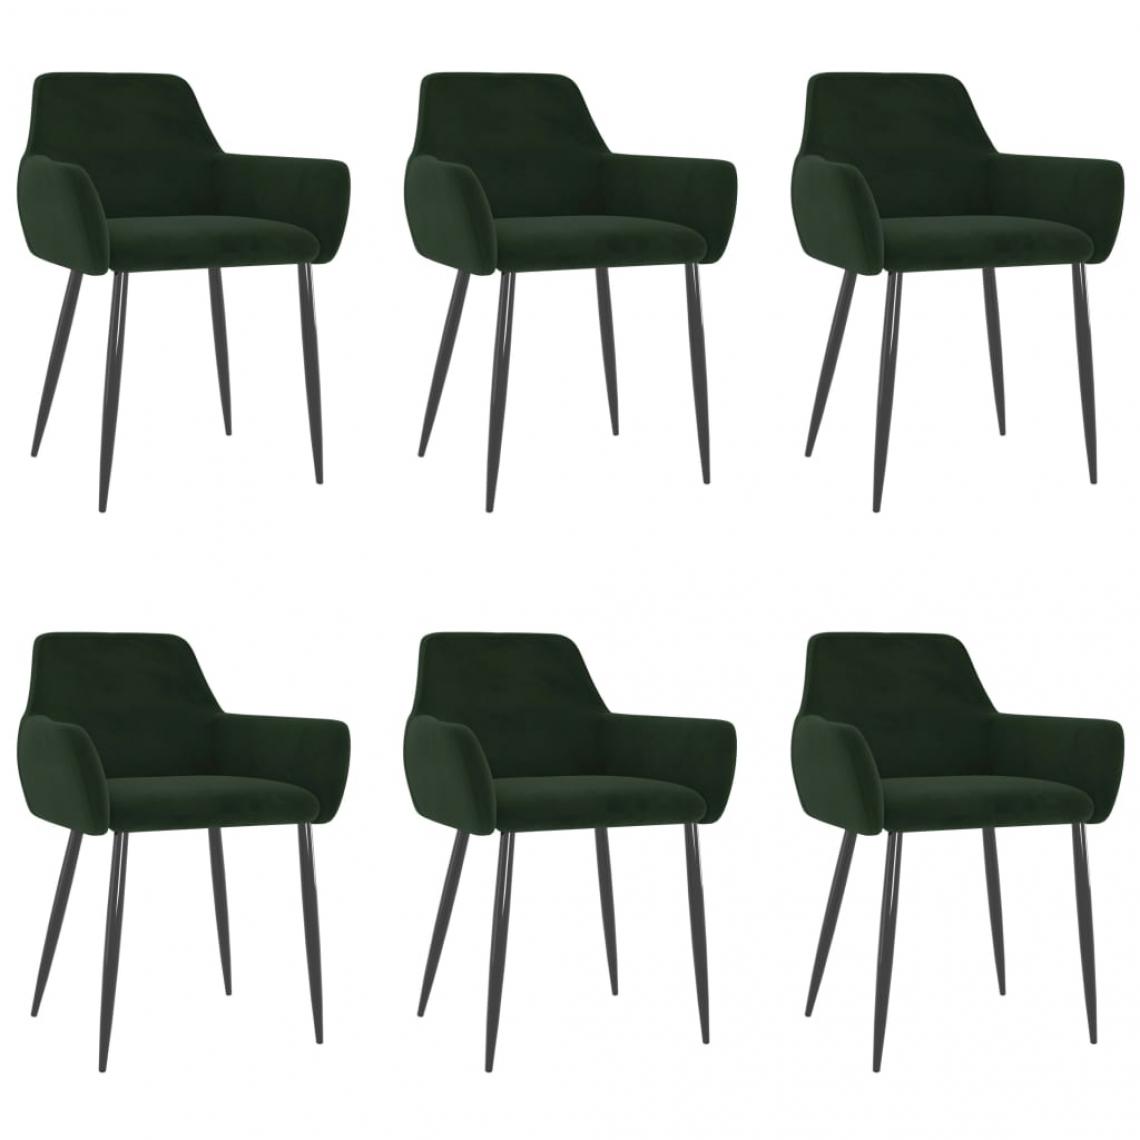 Decoshop26 - Lot de 6 chaises de salle à manger cuisine design moderne velours vert foncé CDS022893 - Chaises